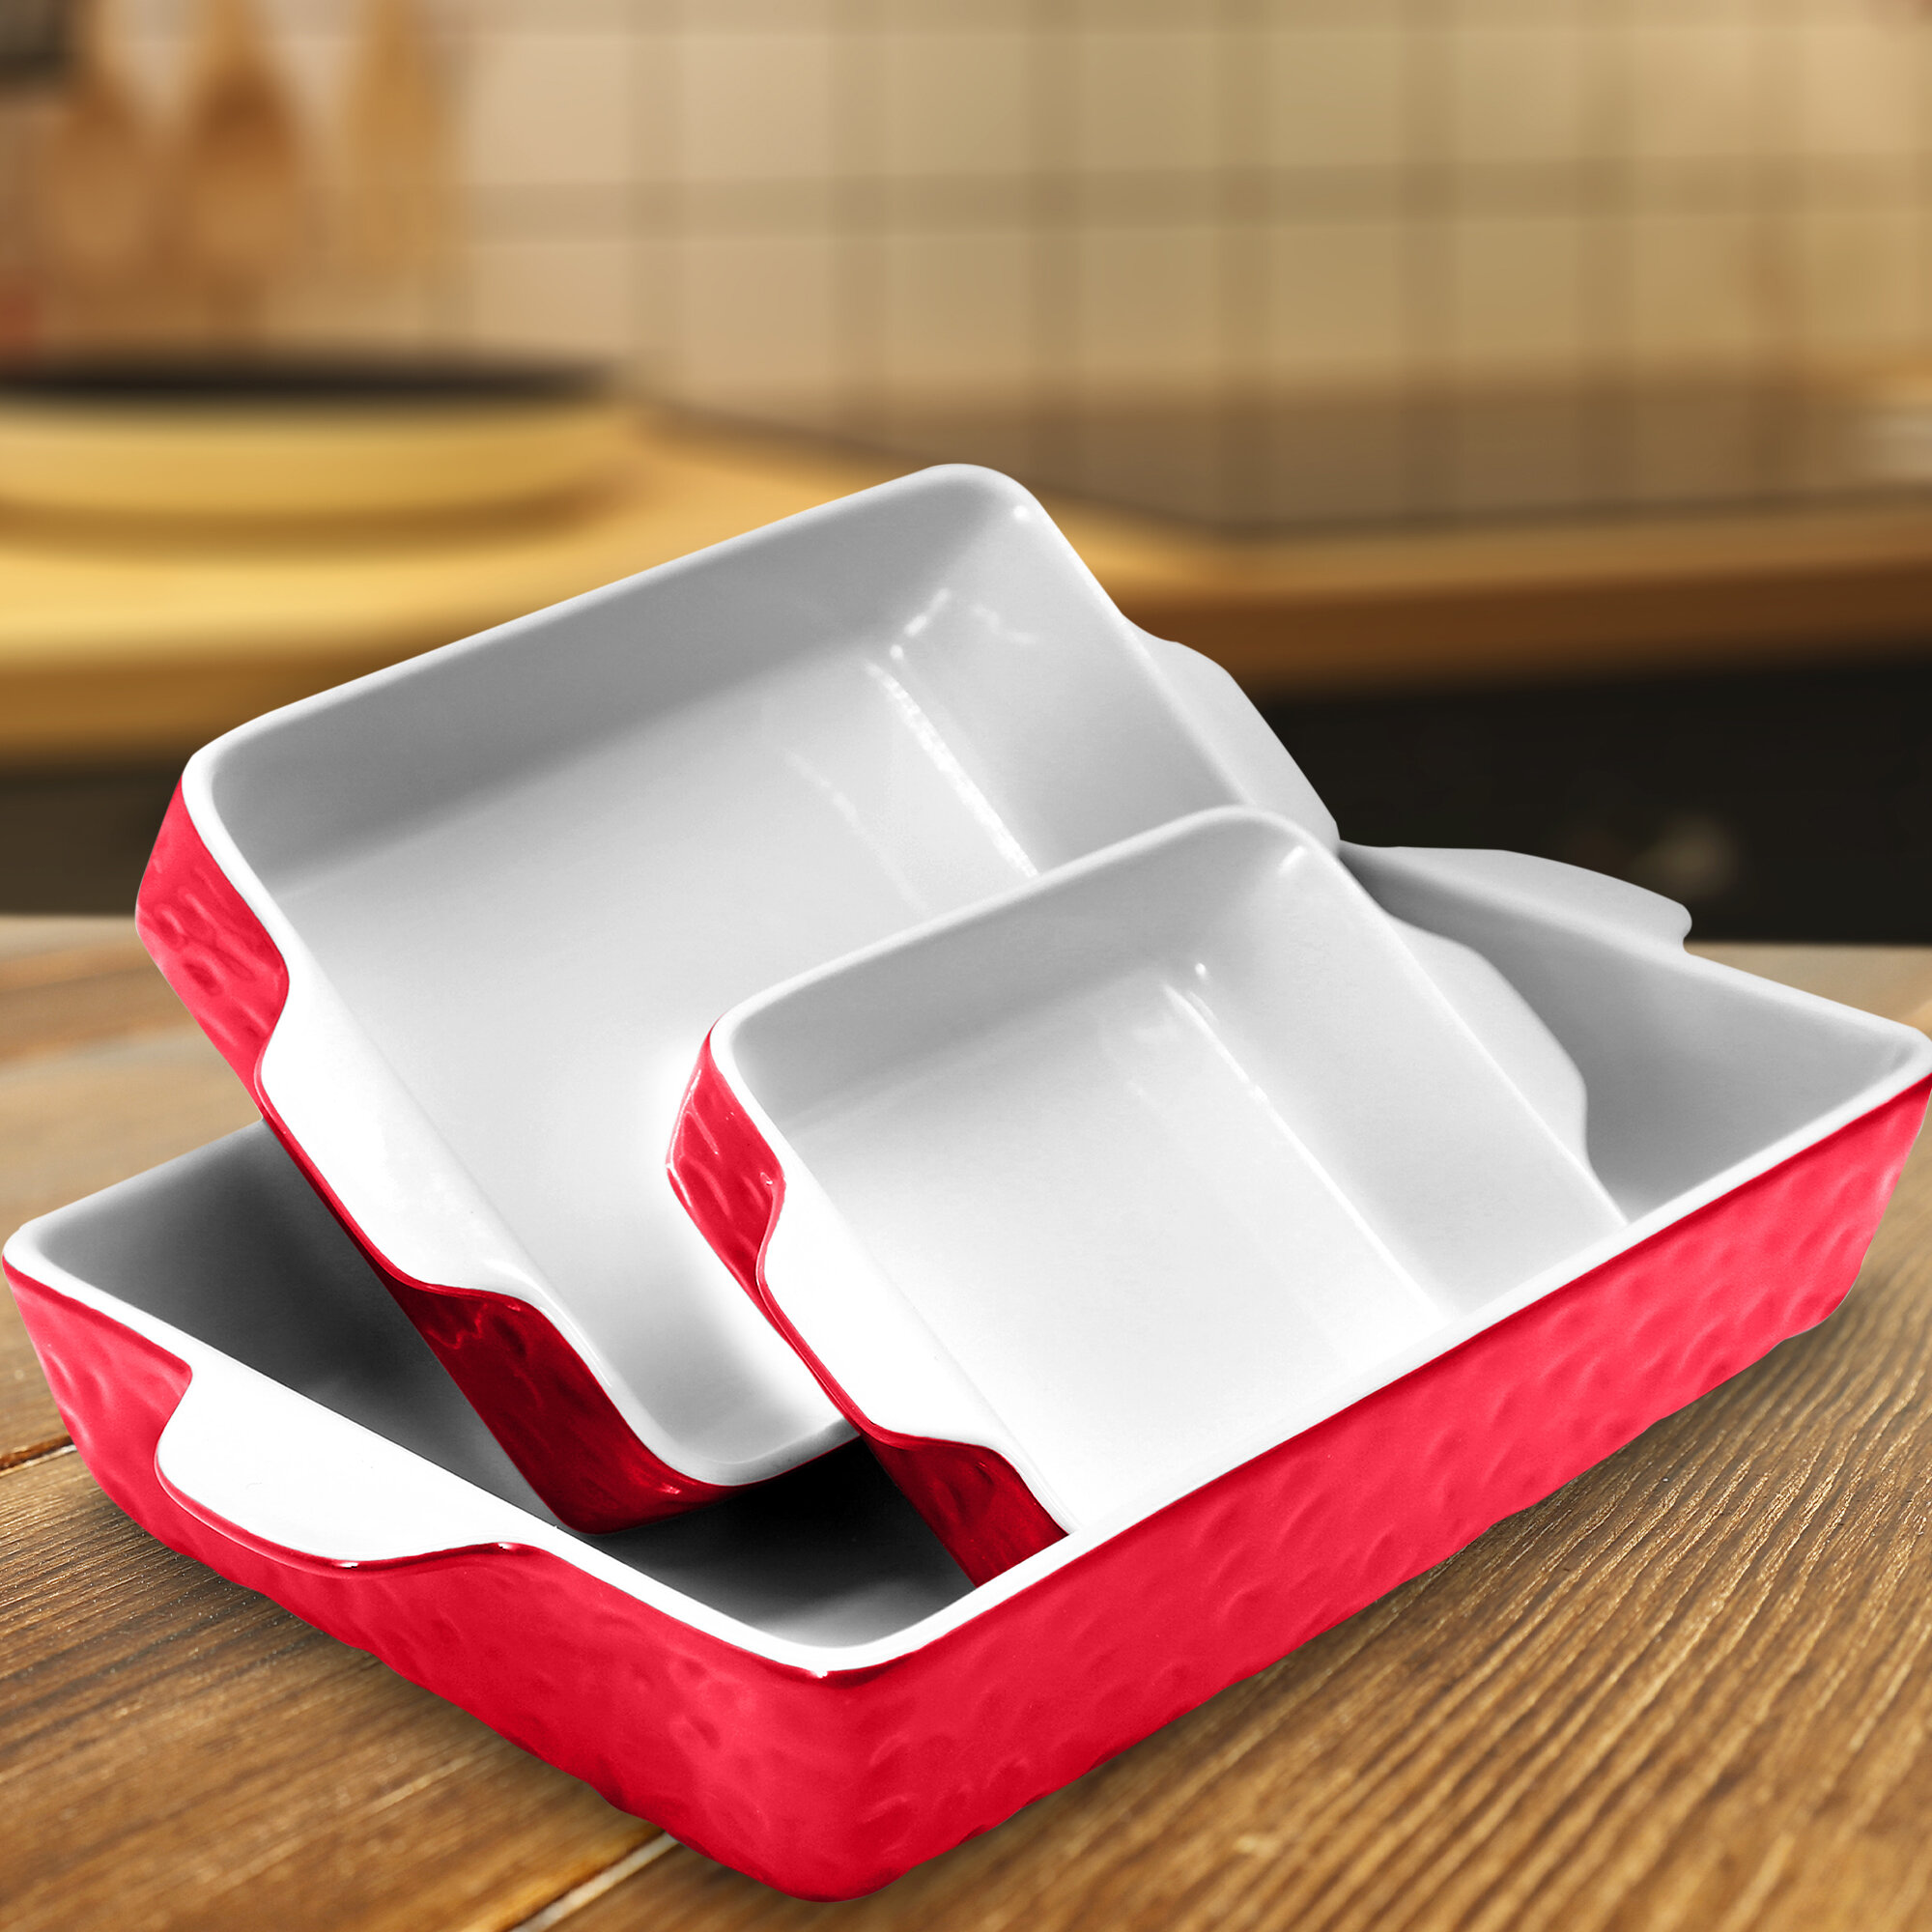 NutriChef 3-Piece Rectangular Ceramic Non-Stick Bakeware Set in